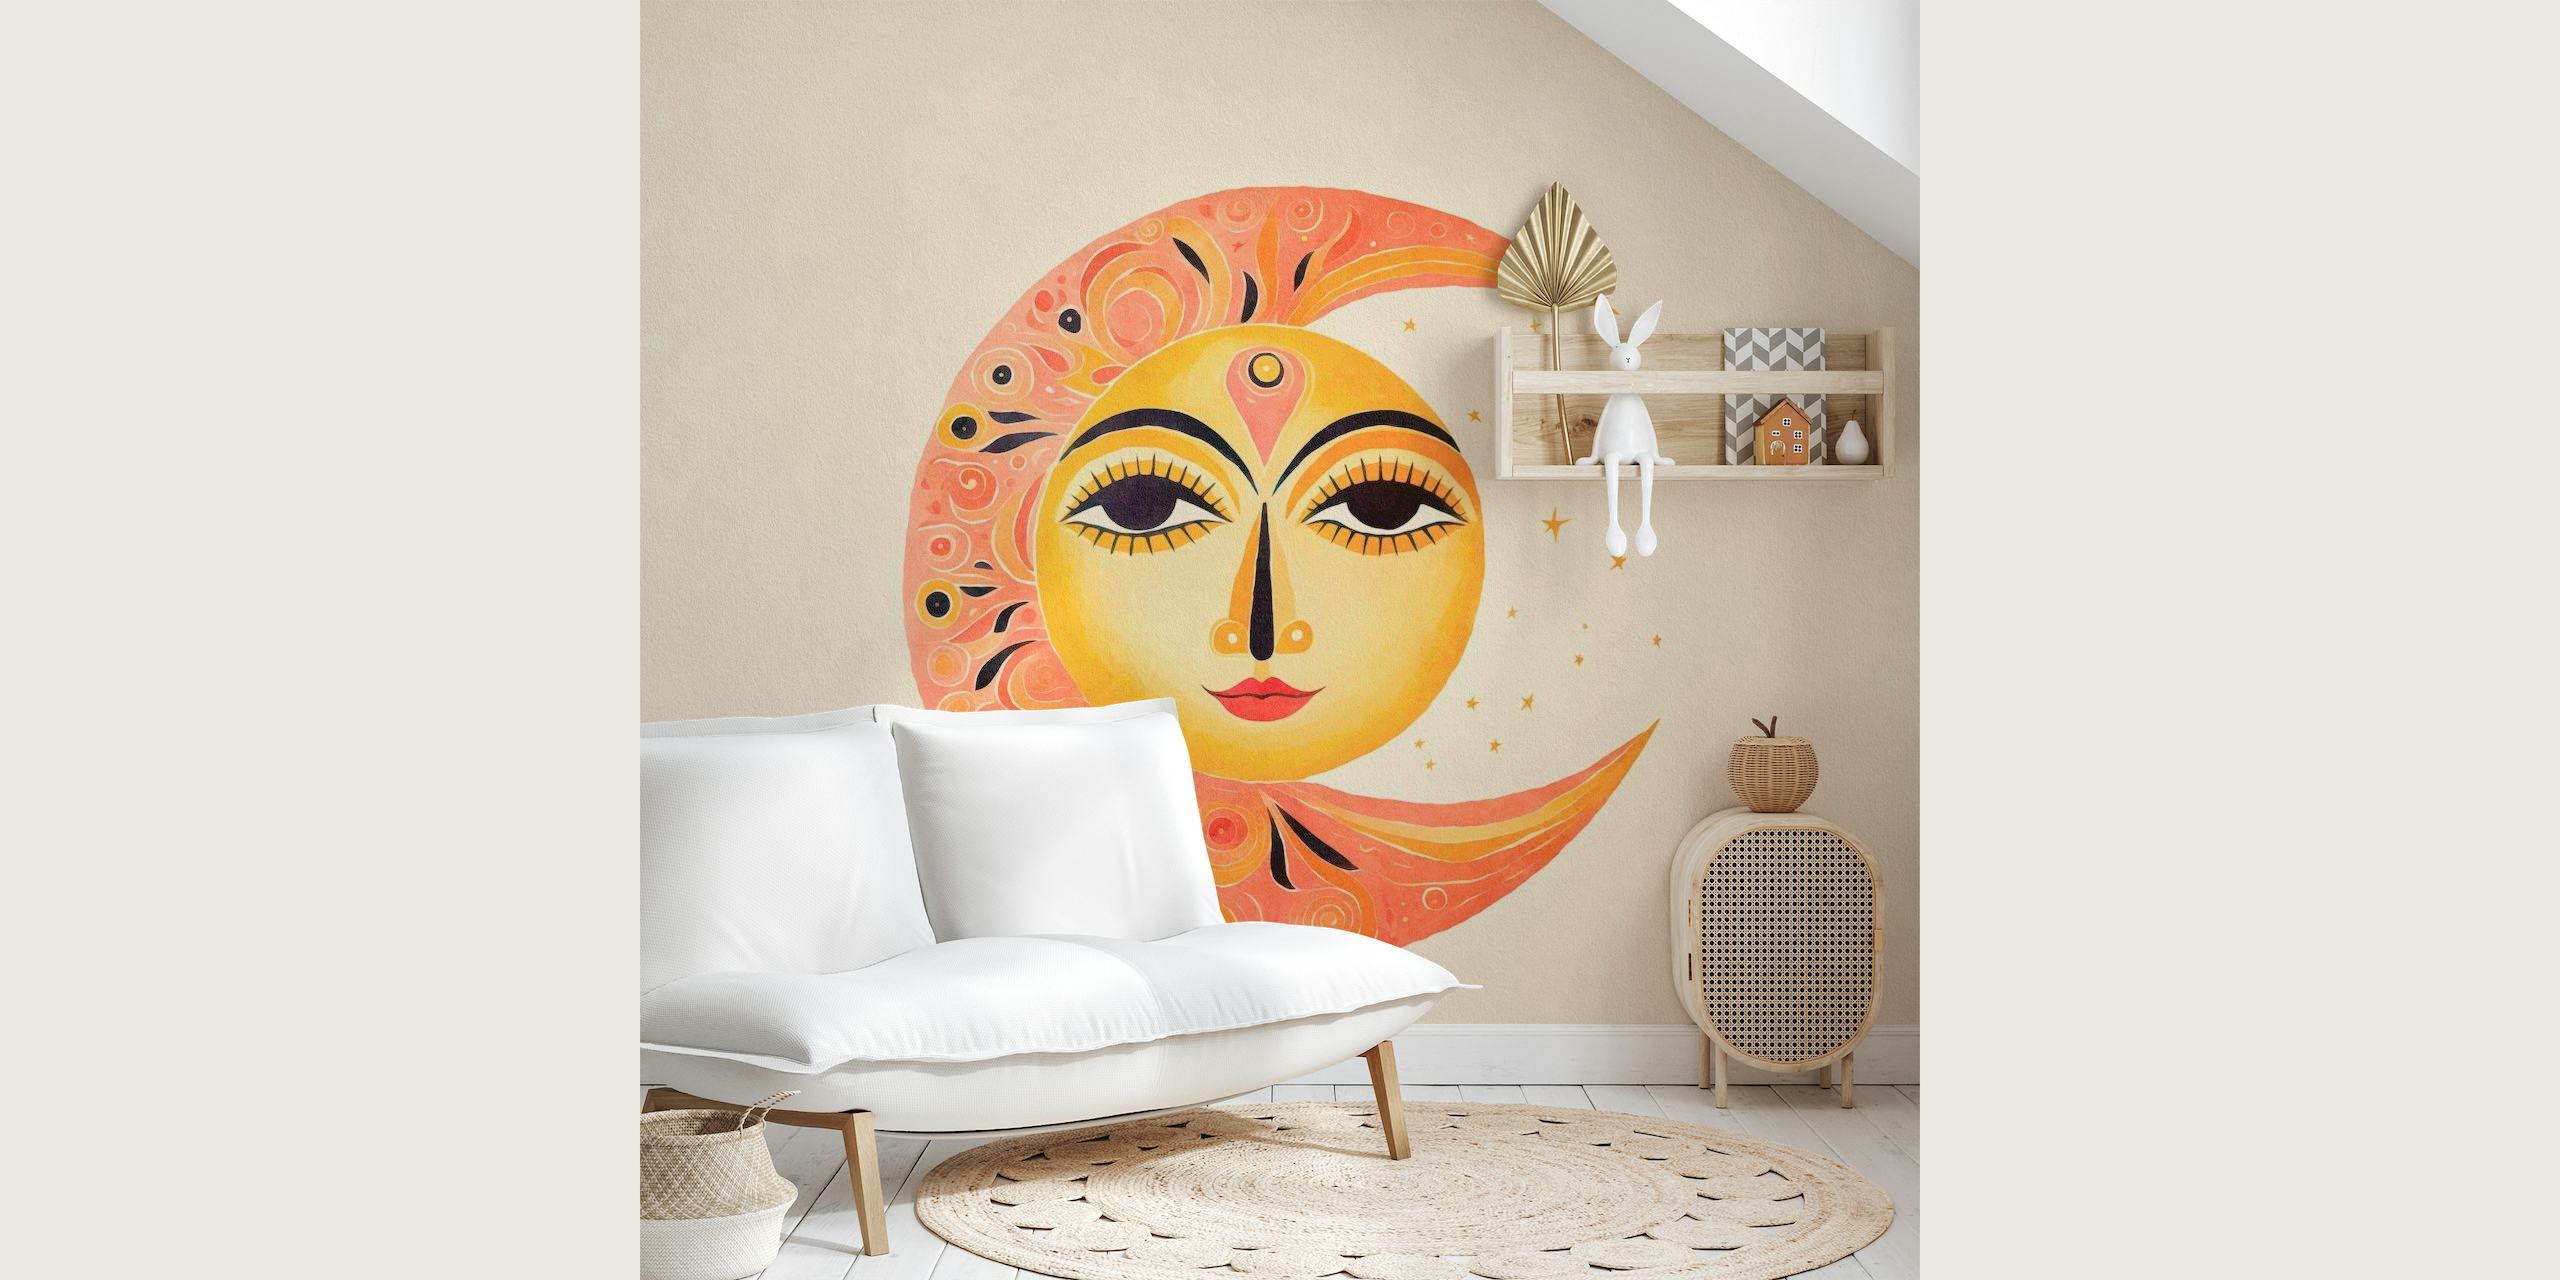 Fantazyjna fototapeta twarz słońca i księżyca z harmonijnym wzorem słońca i księżyca